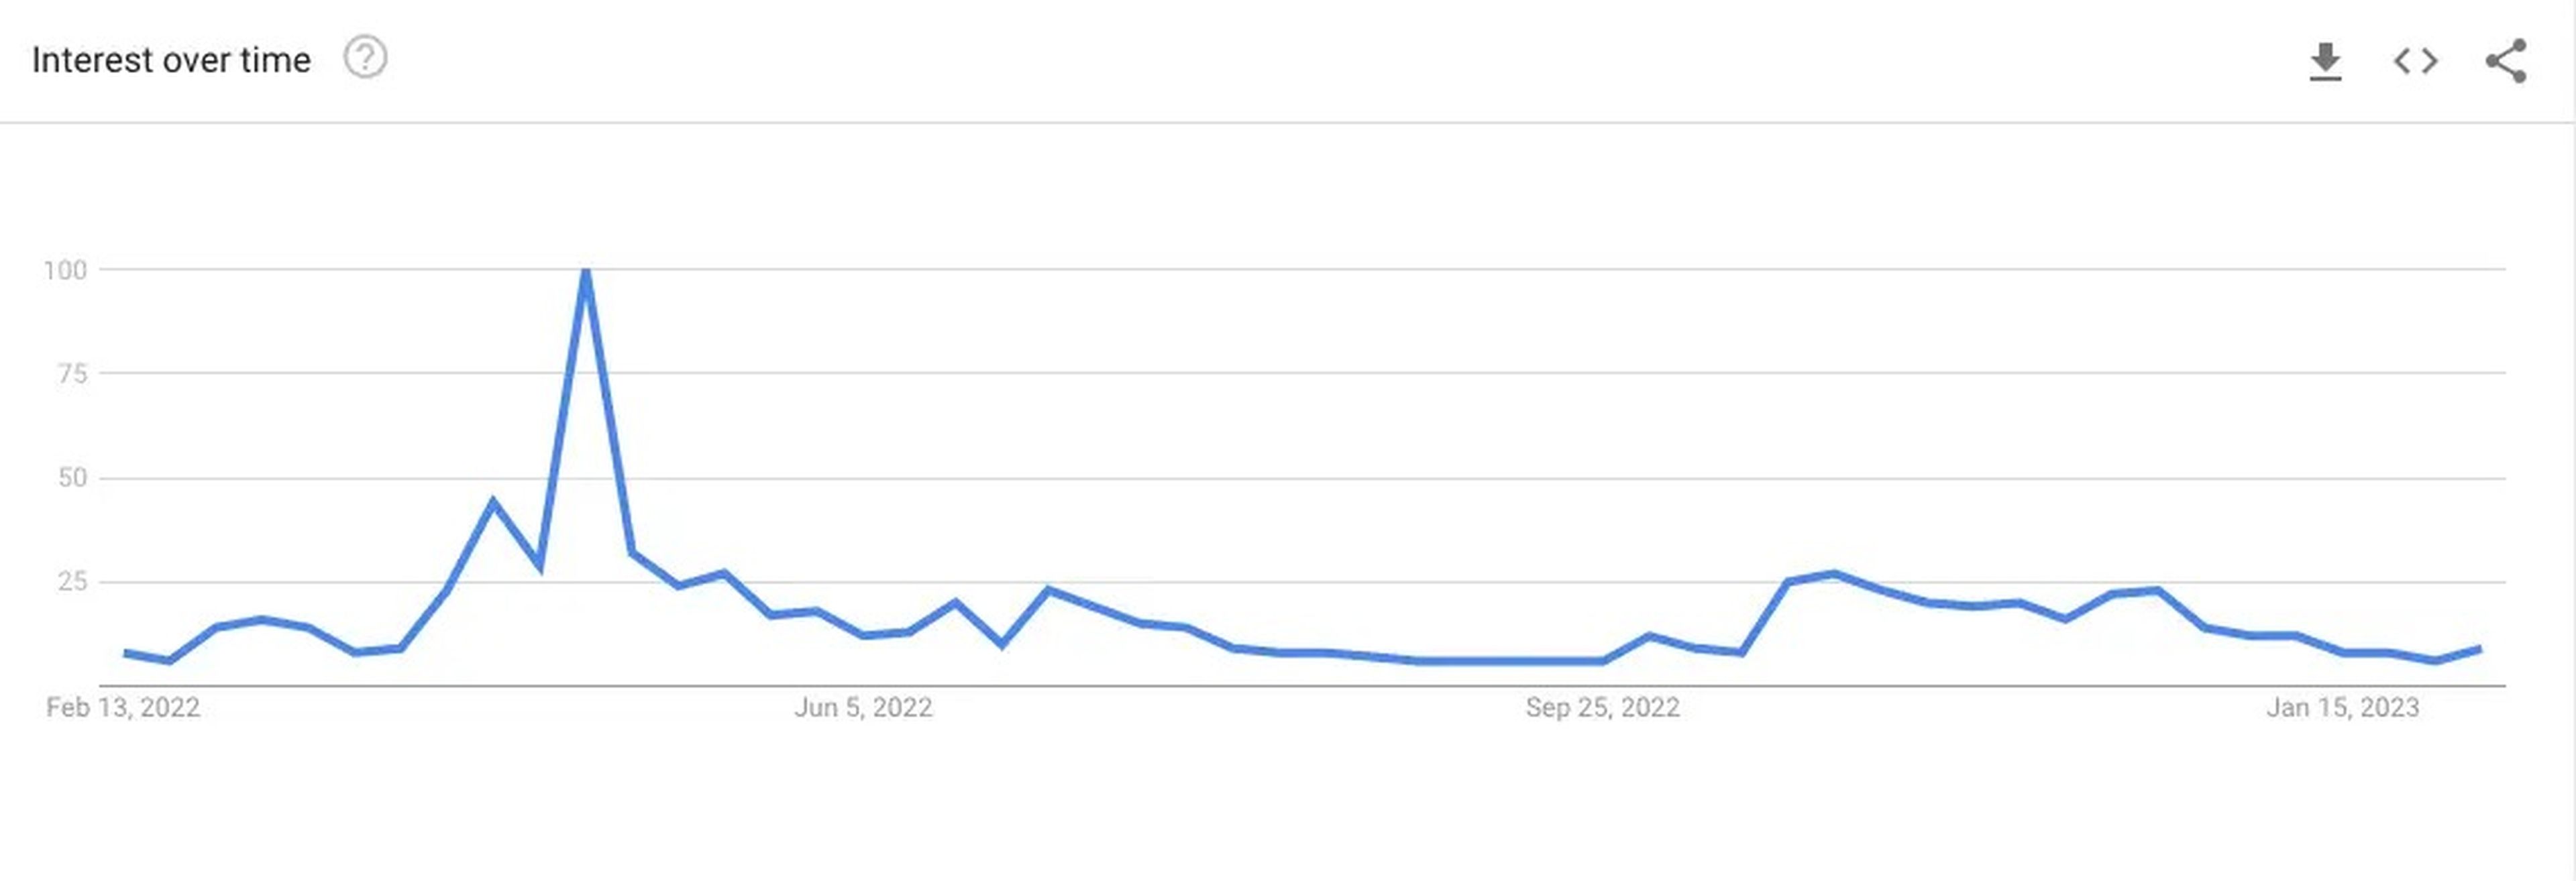 El interés en Elon Musk a lo largo del tiempo, según Google Trends.